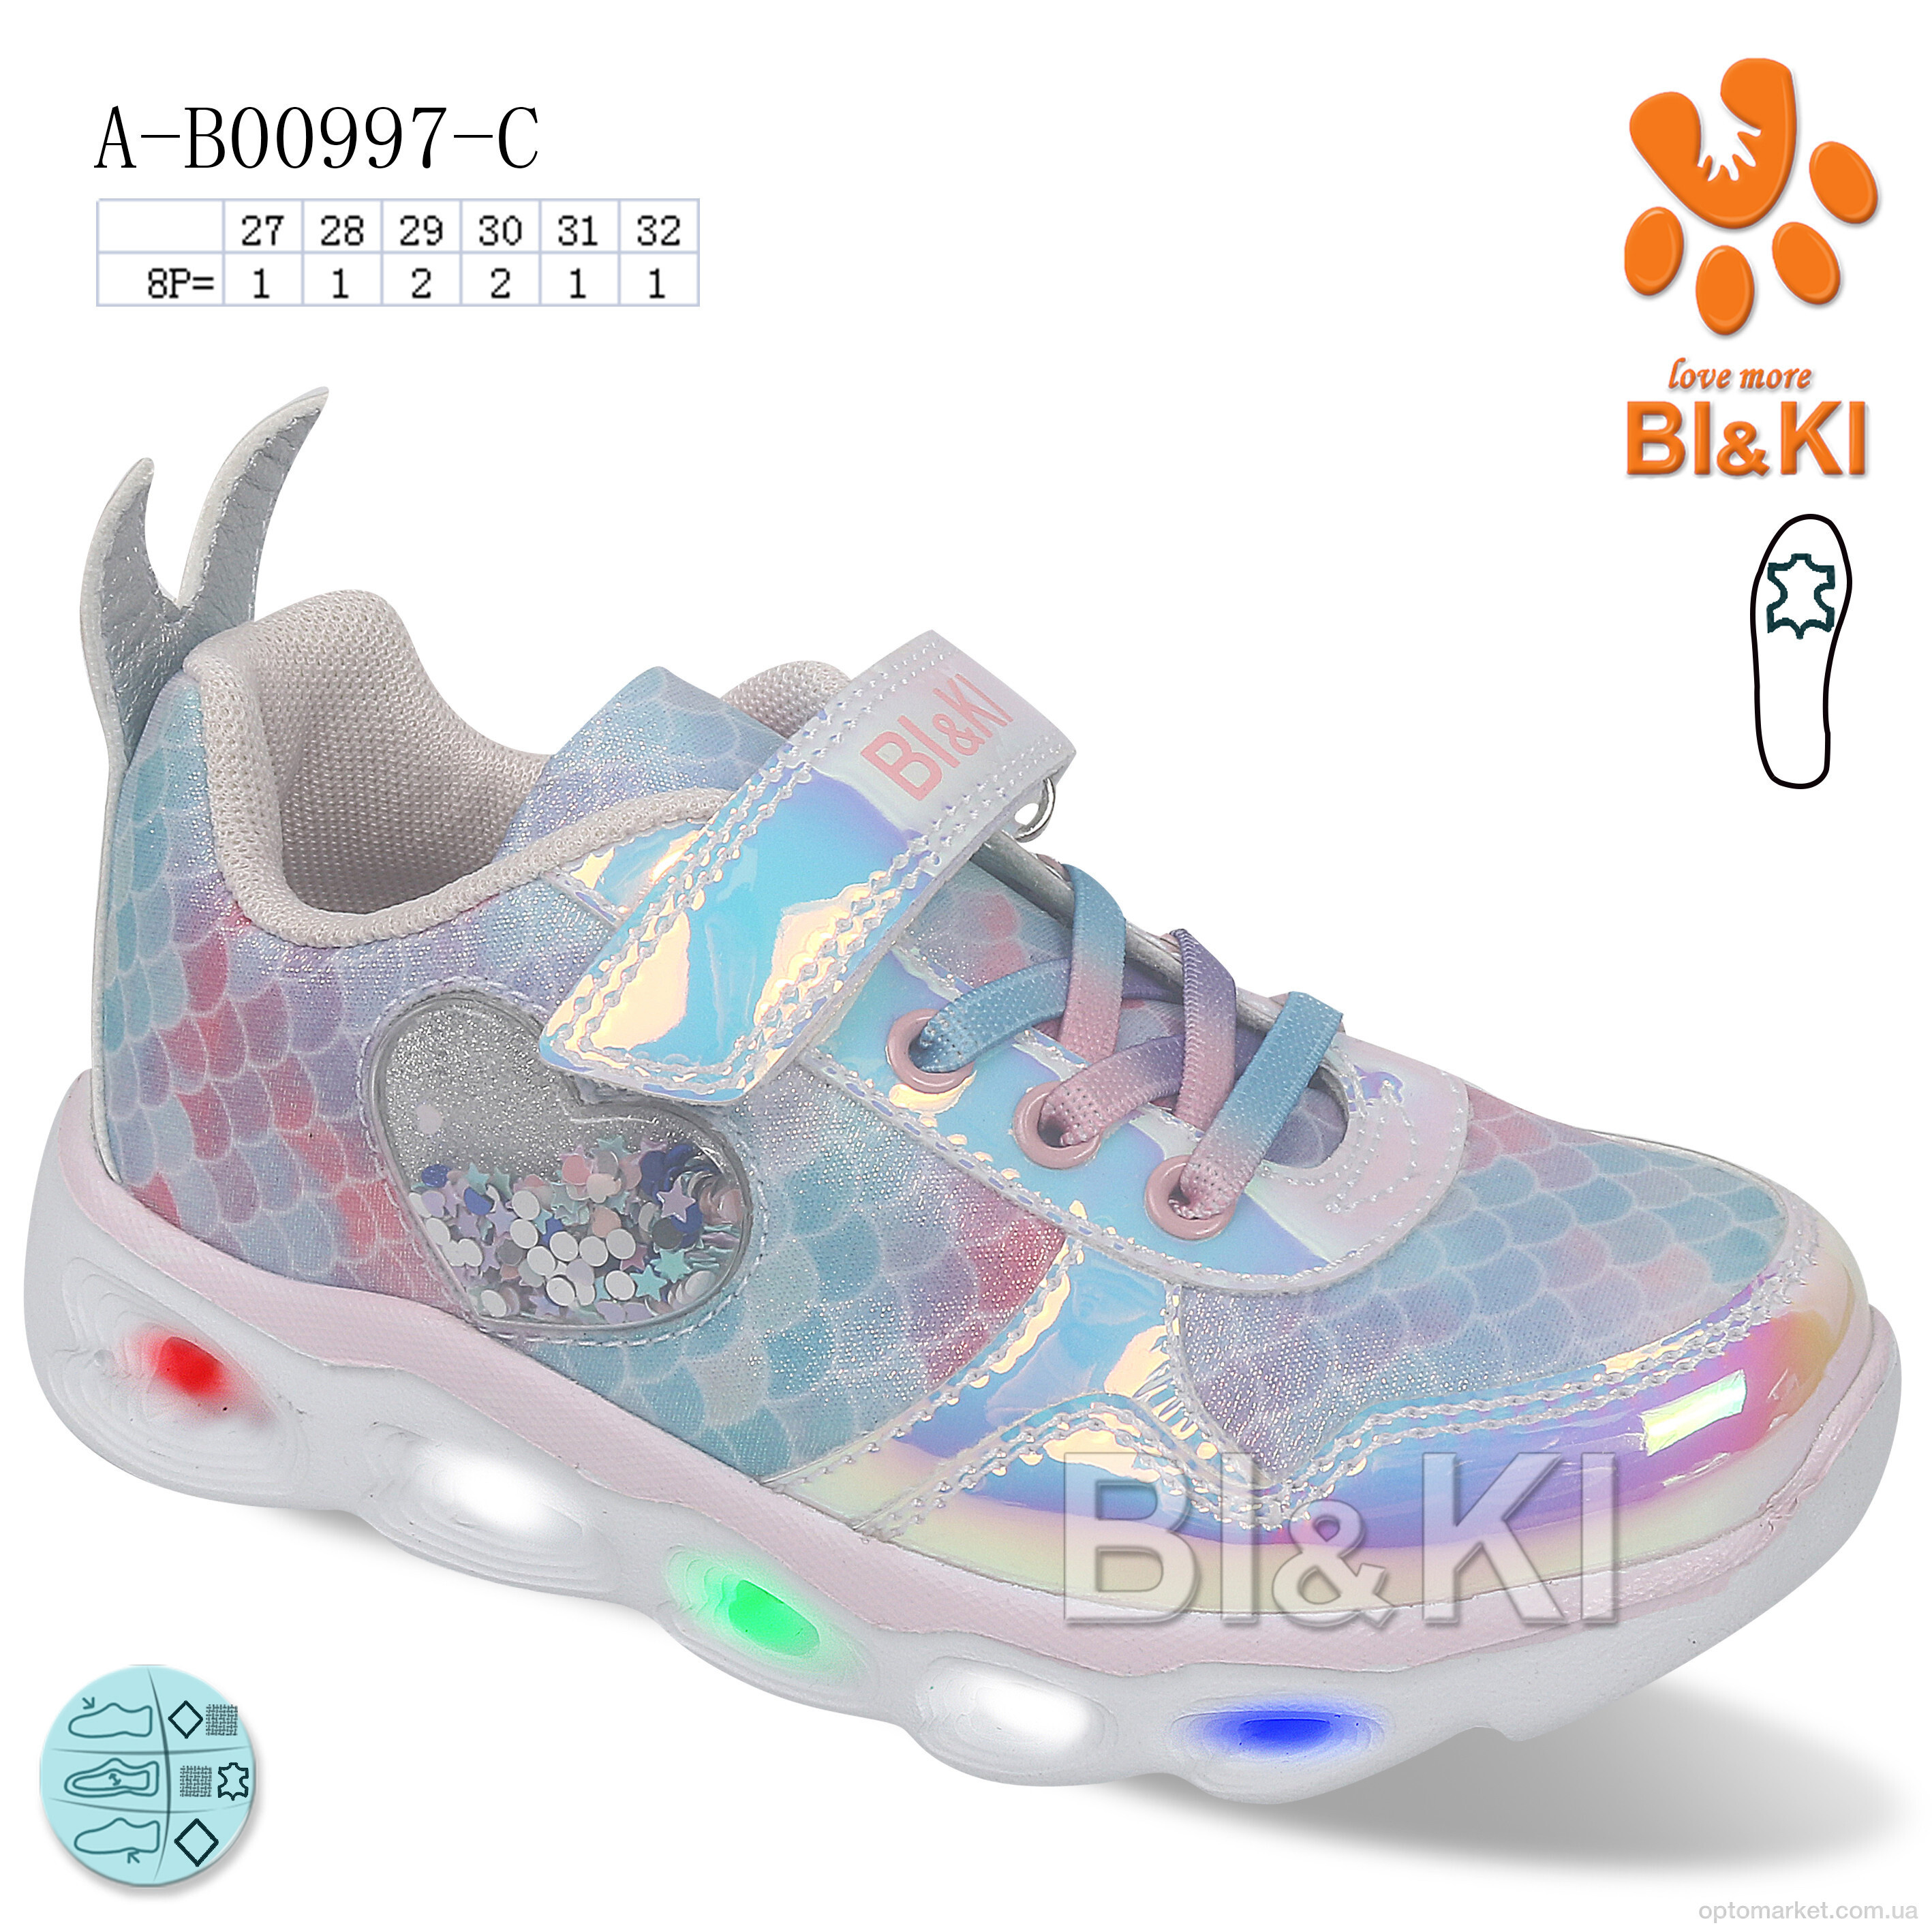 Купить Кросівки дитячі A-B00997-C LED Bi&Ki мікс, фото 1